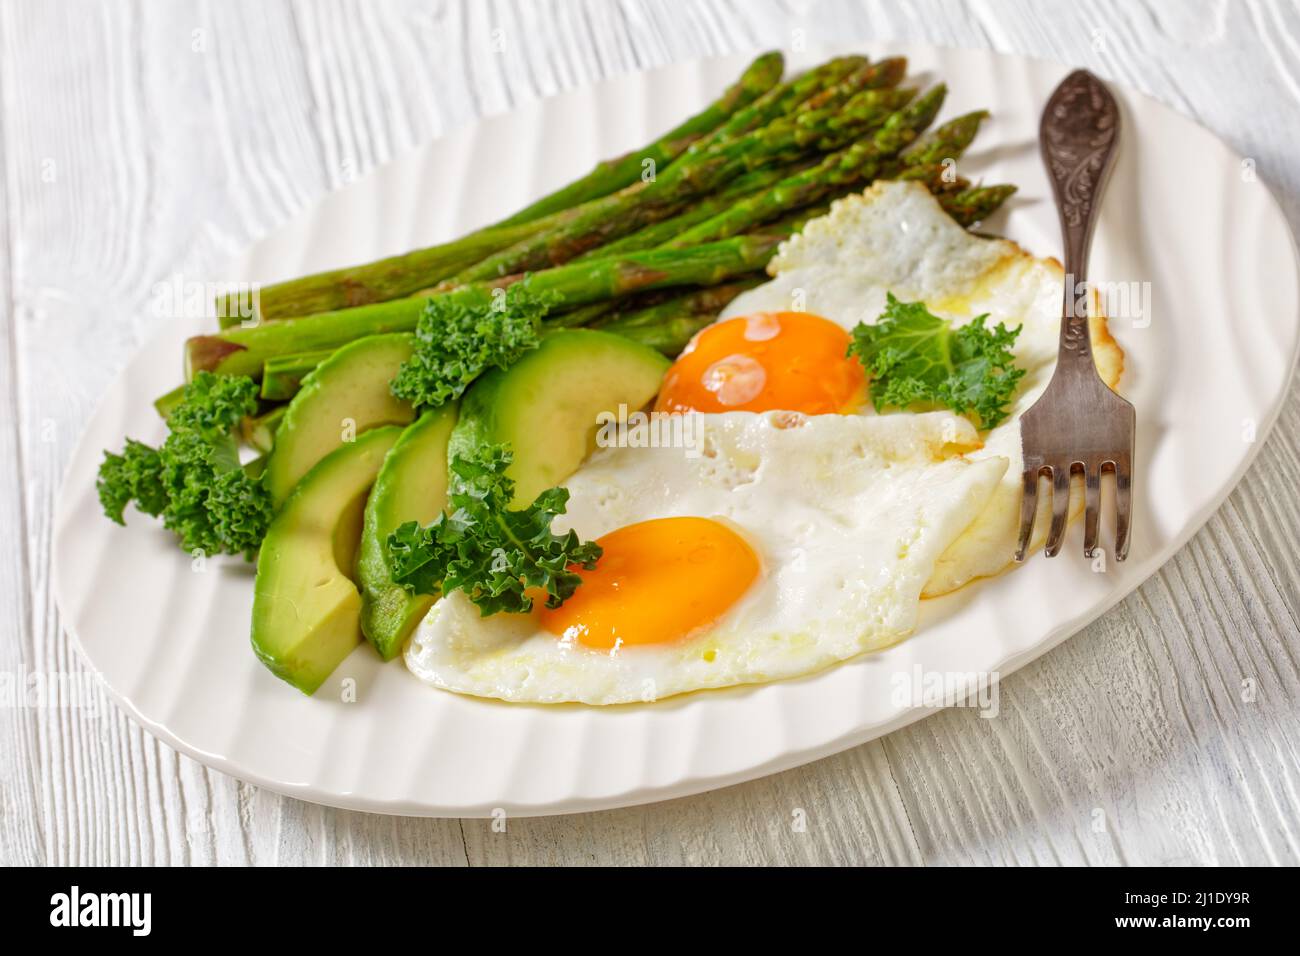 primo piano di asparagi arrostiti, avocado fresco maturo e uova fritte con tuorli runny su un piatto bianco Foto Stock